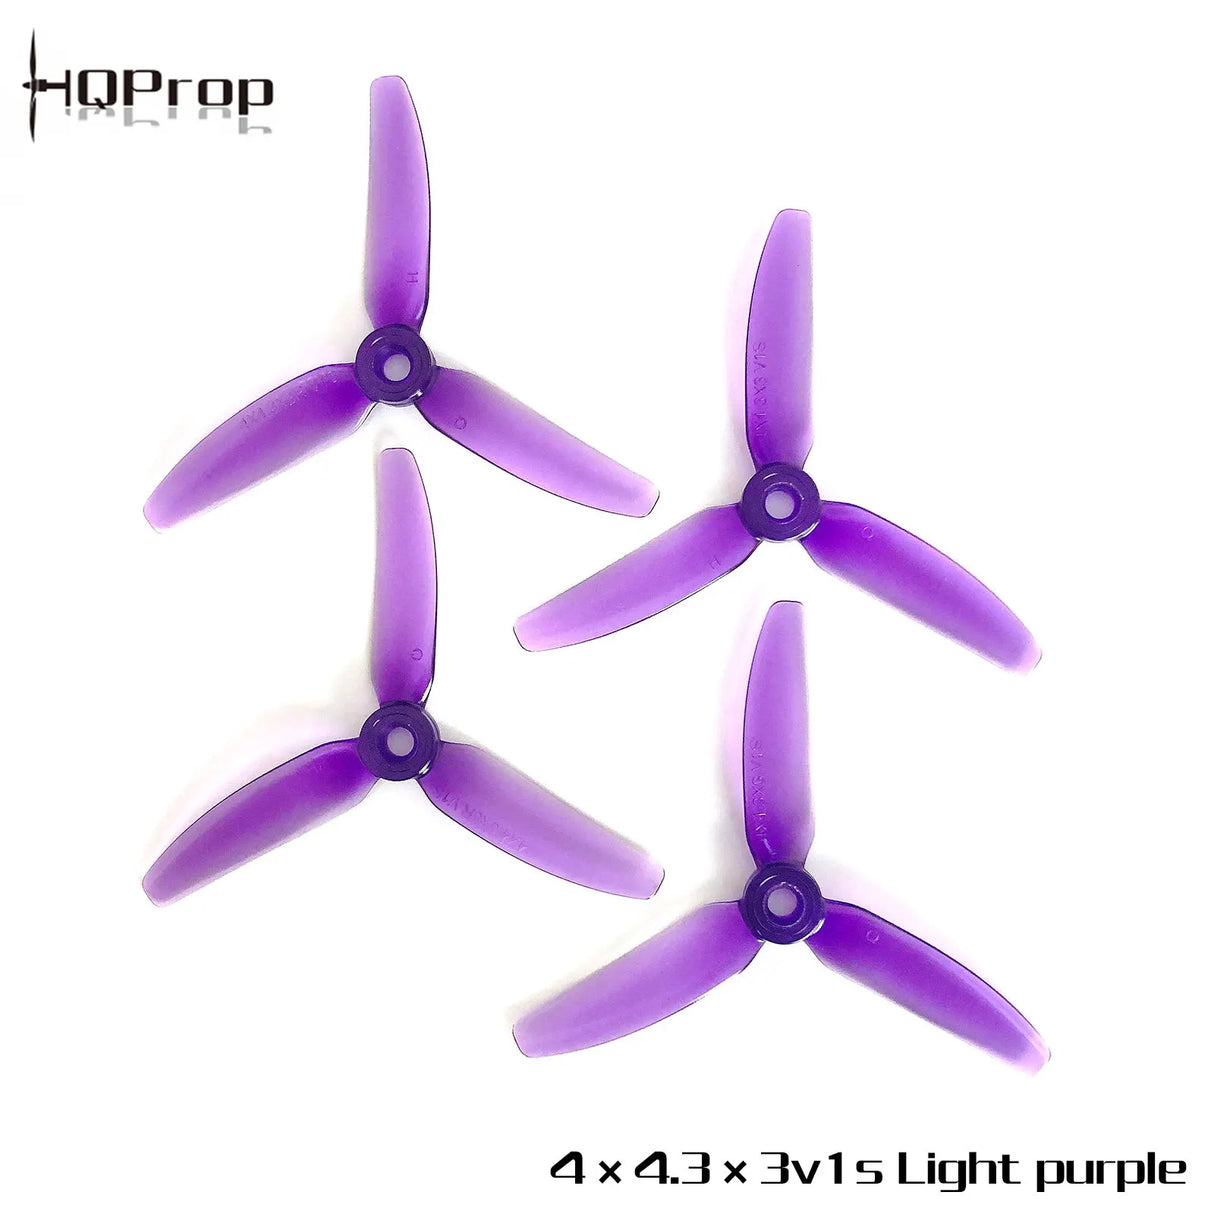 HQProp 4X4.3X3V1S - DroneDynamics.ca